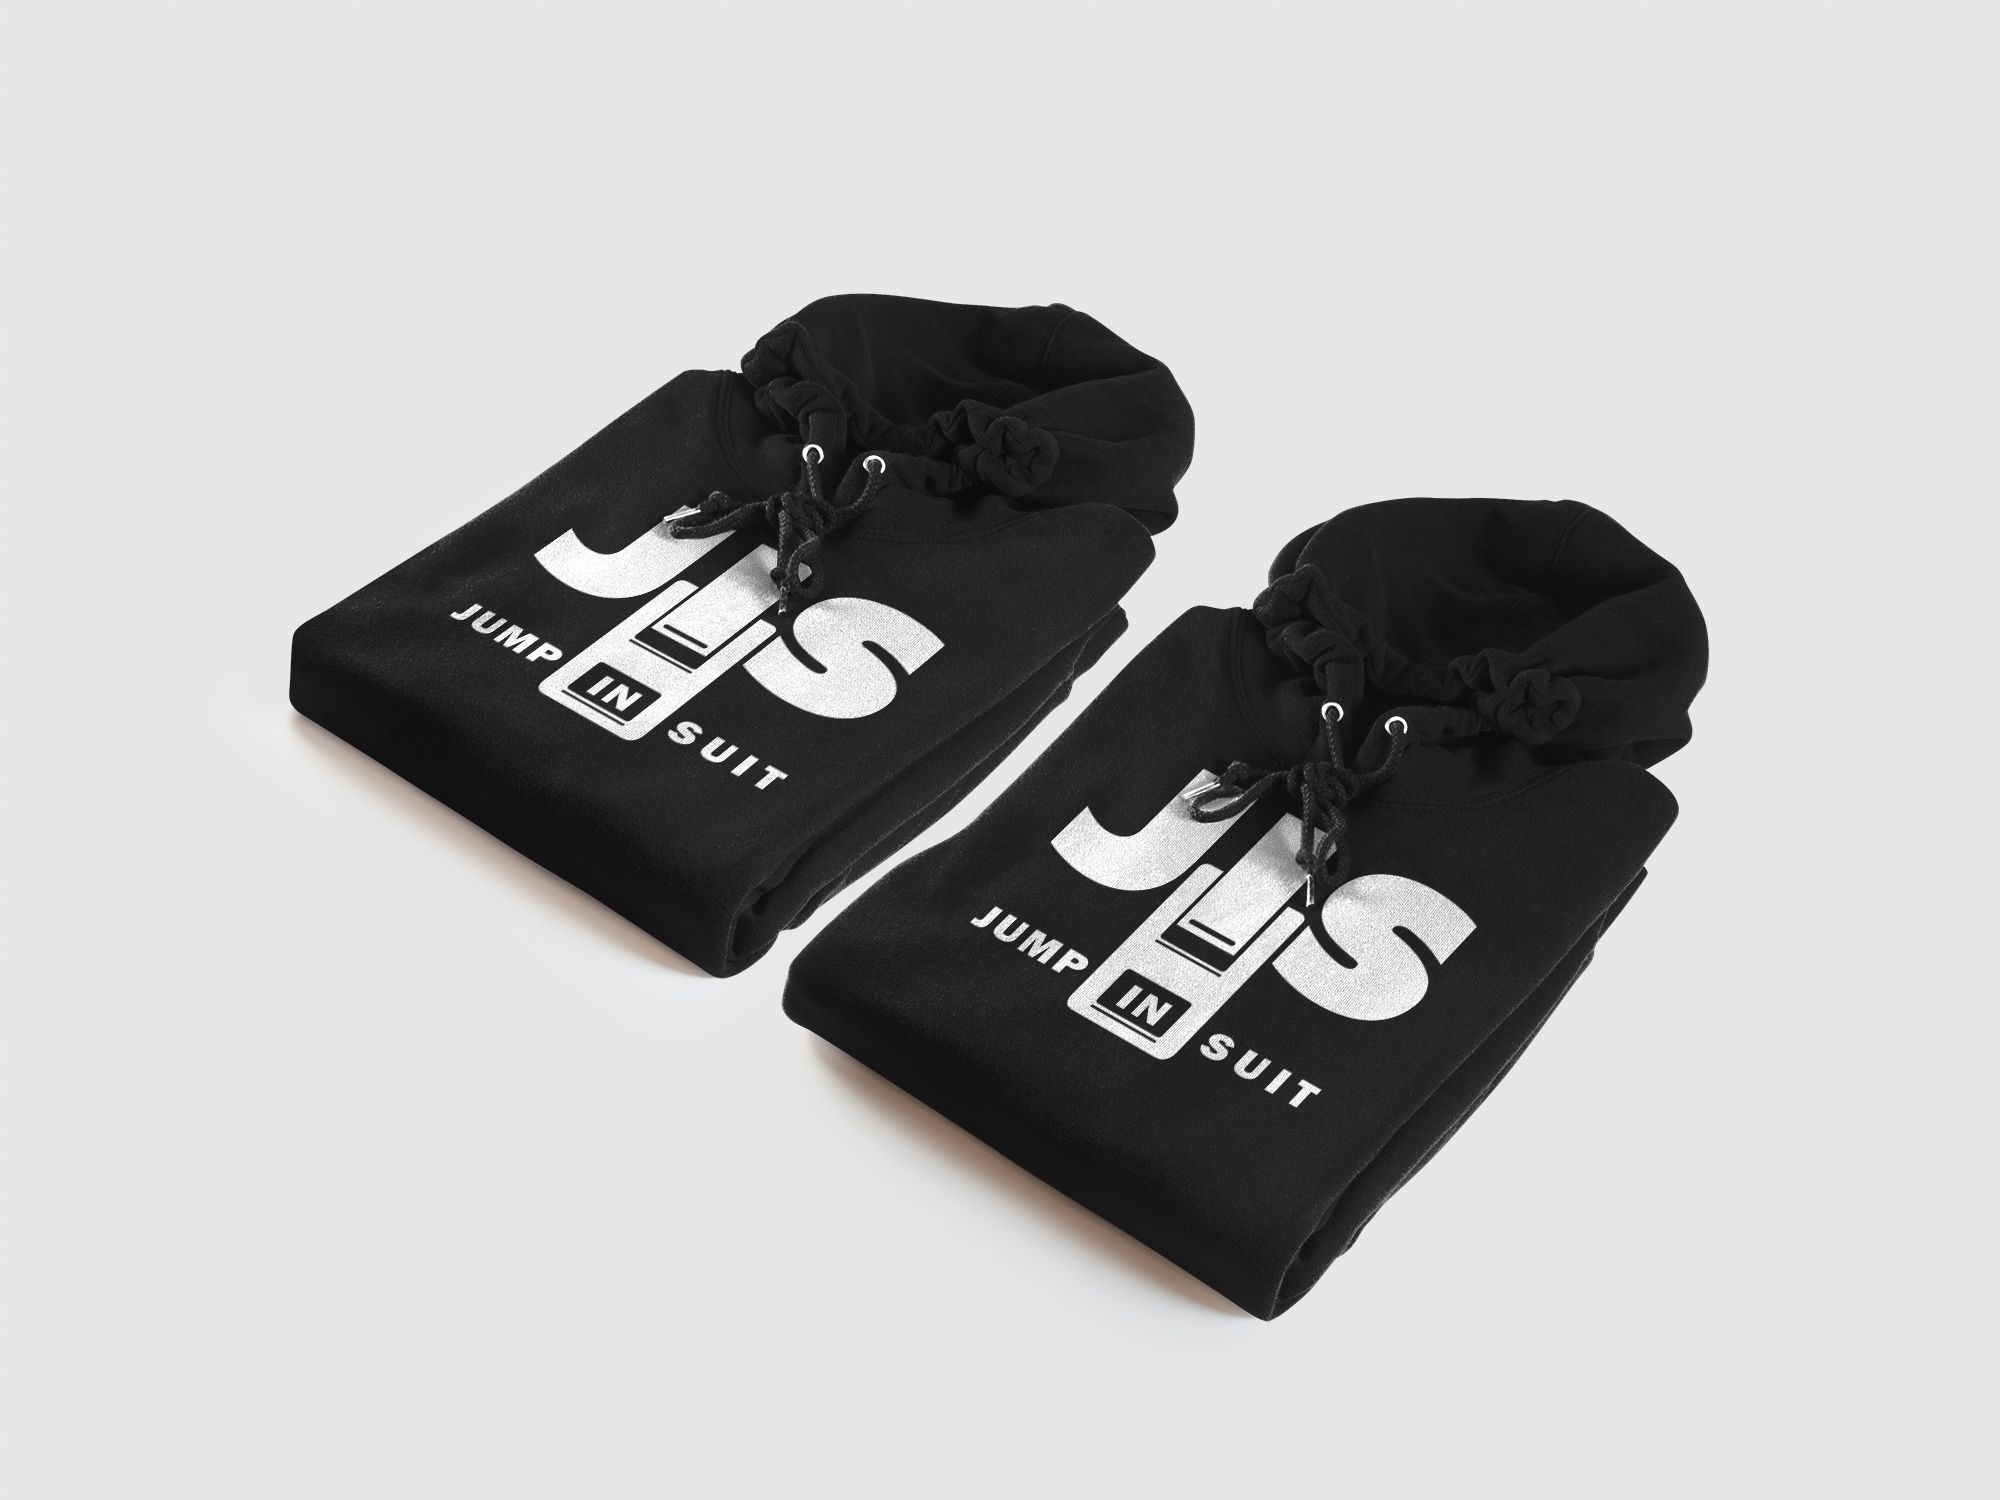 Логотип для JIS (Jump in suit) - дизайнер weste32